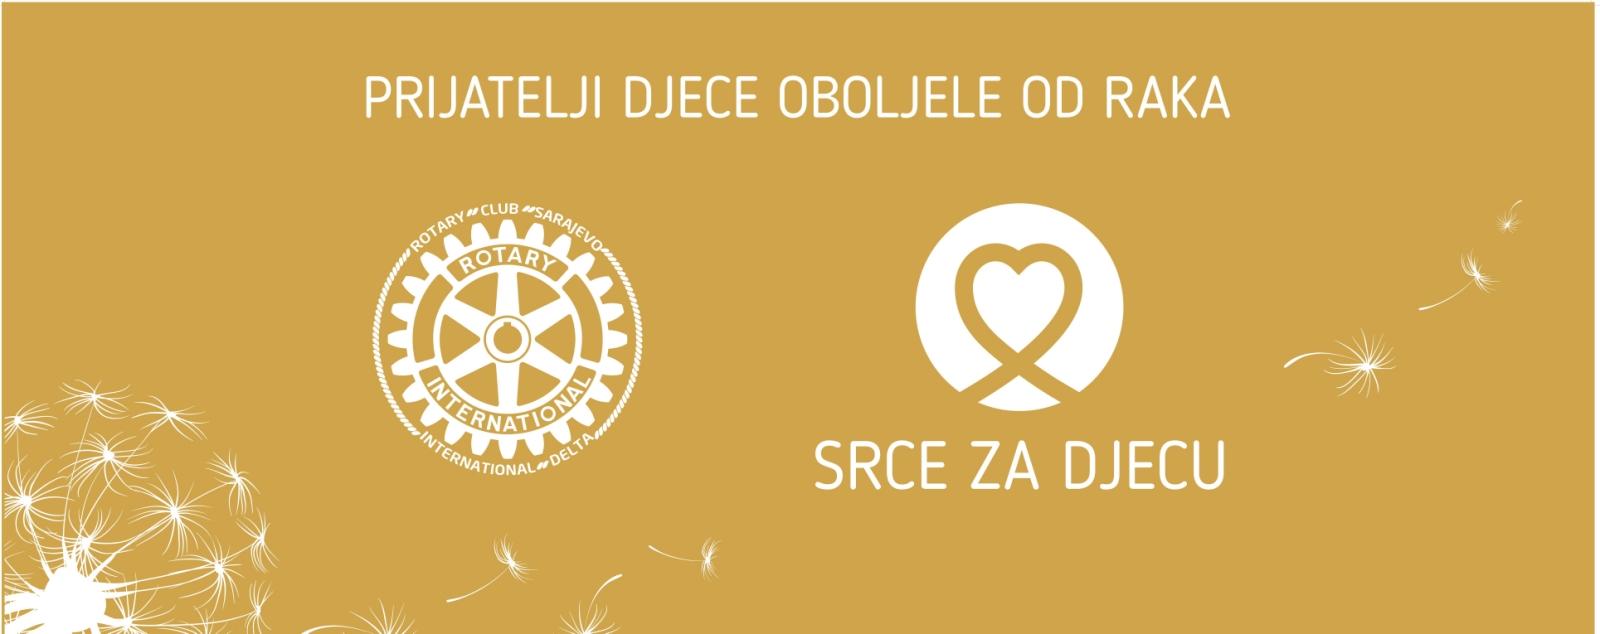 Donatorska večer sa Rotary Club Sarajevo Delta International - Avaz